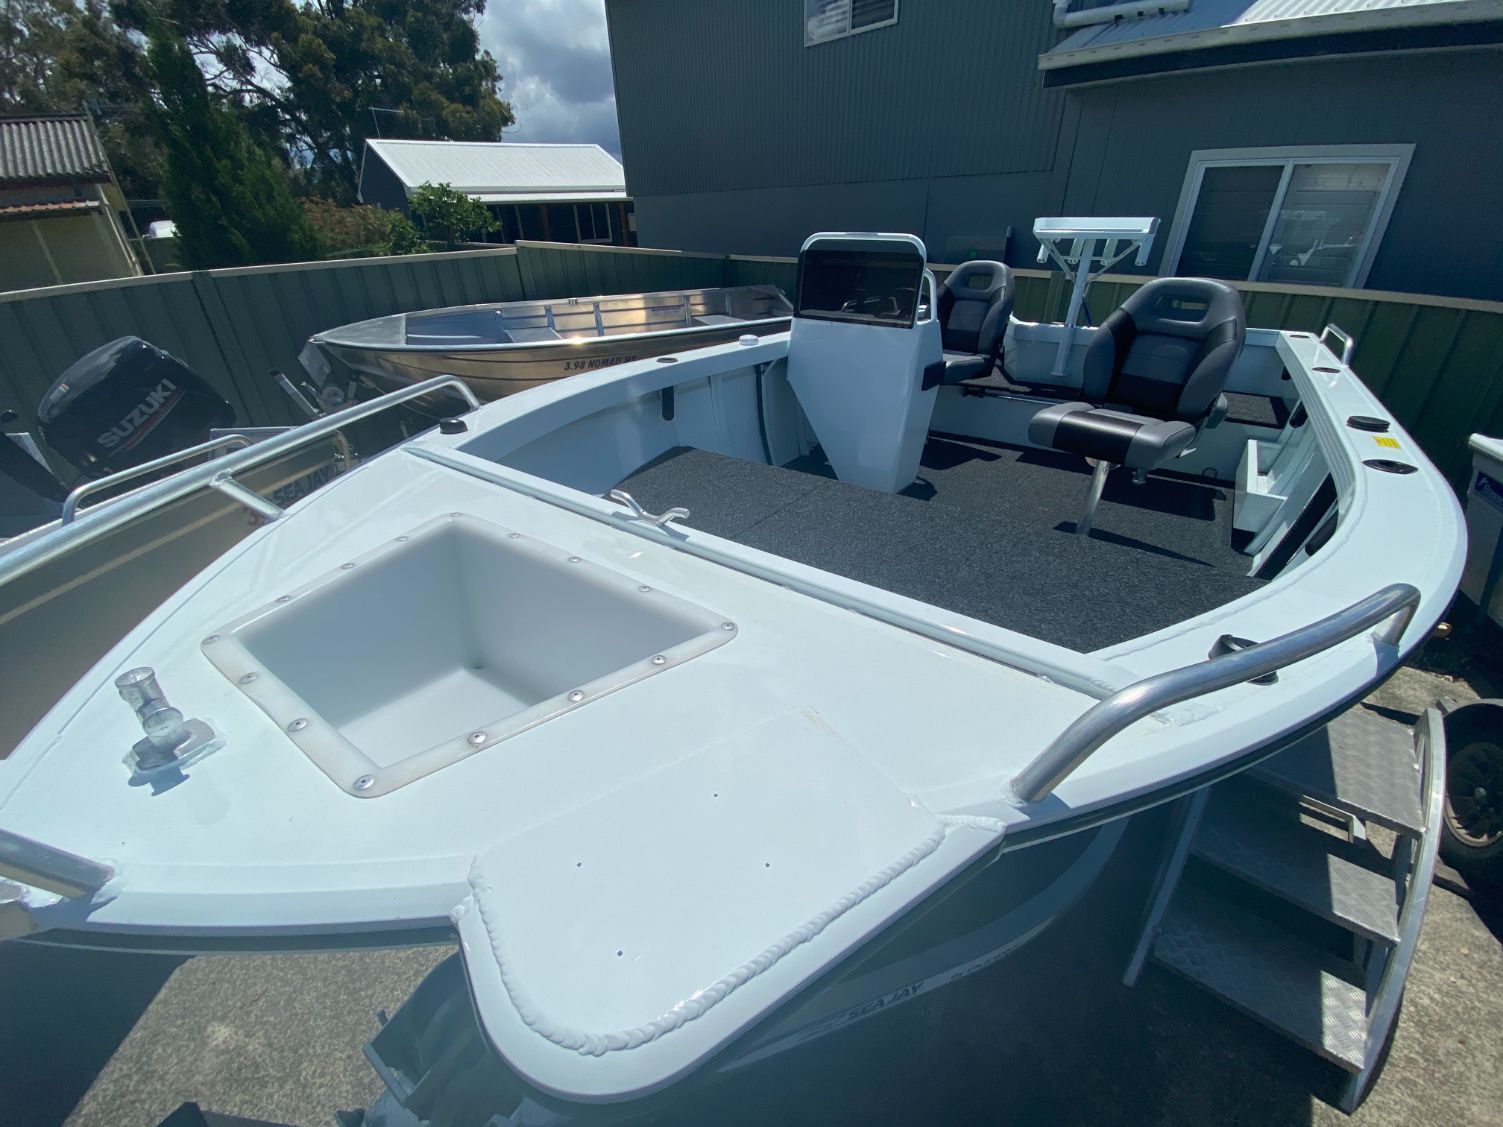 468 Avenger Sports — Boat Sales in Port Macquarie, NSW